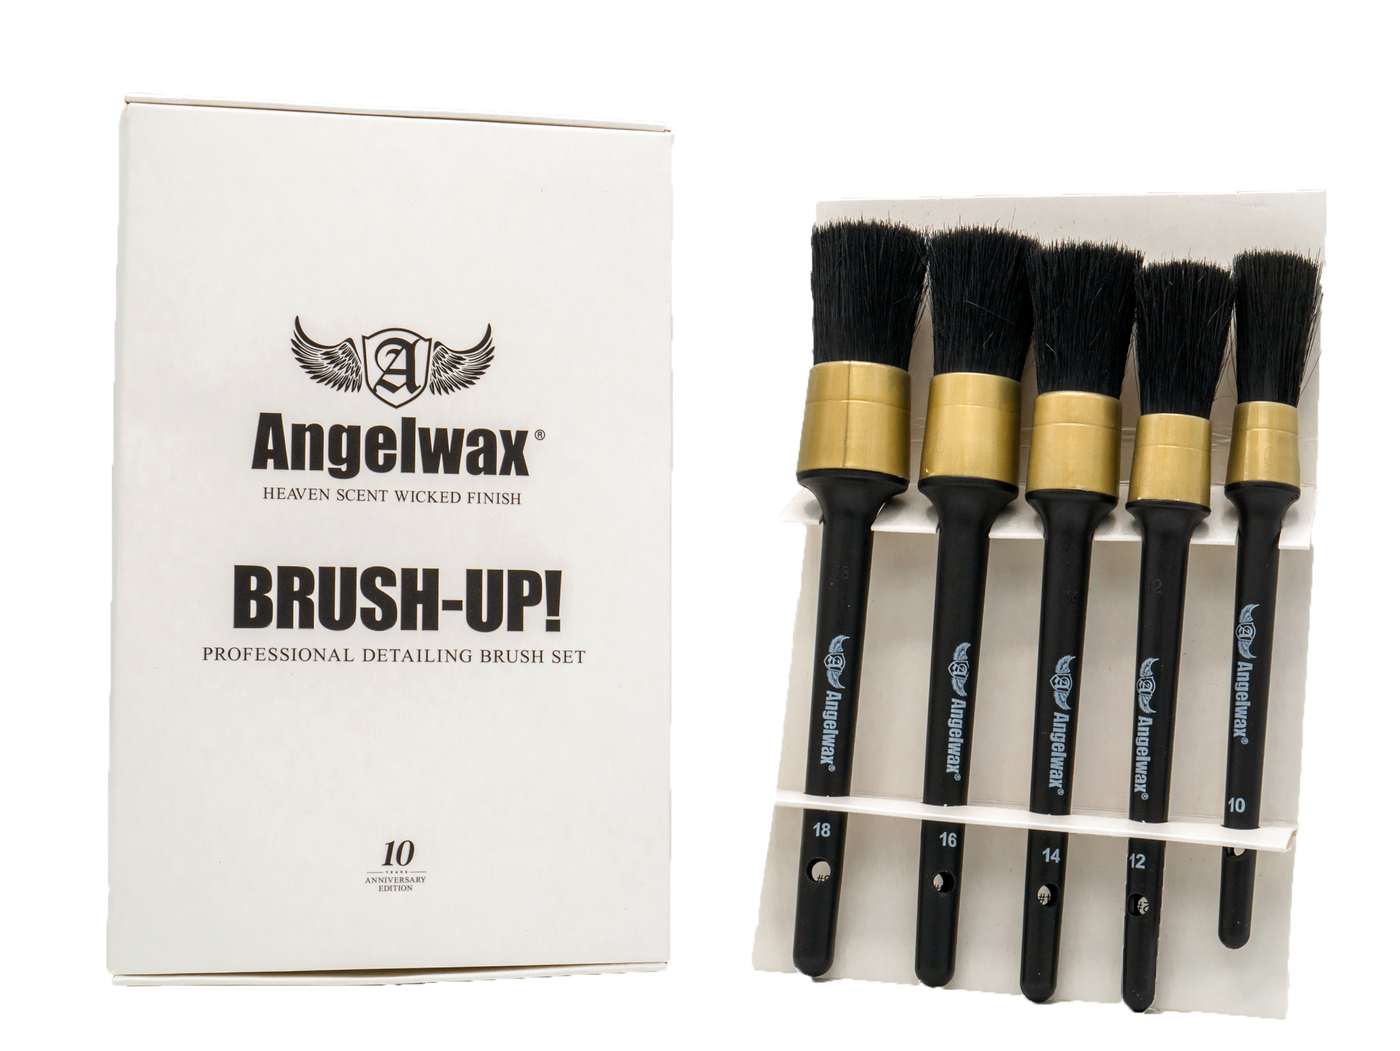 Brush-Up! detailing kit